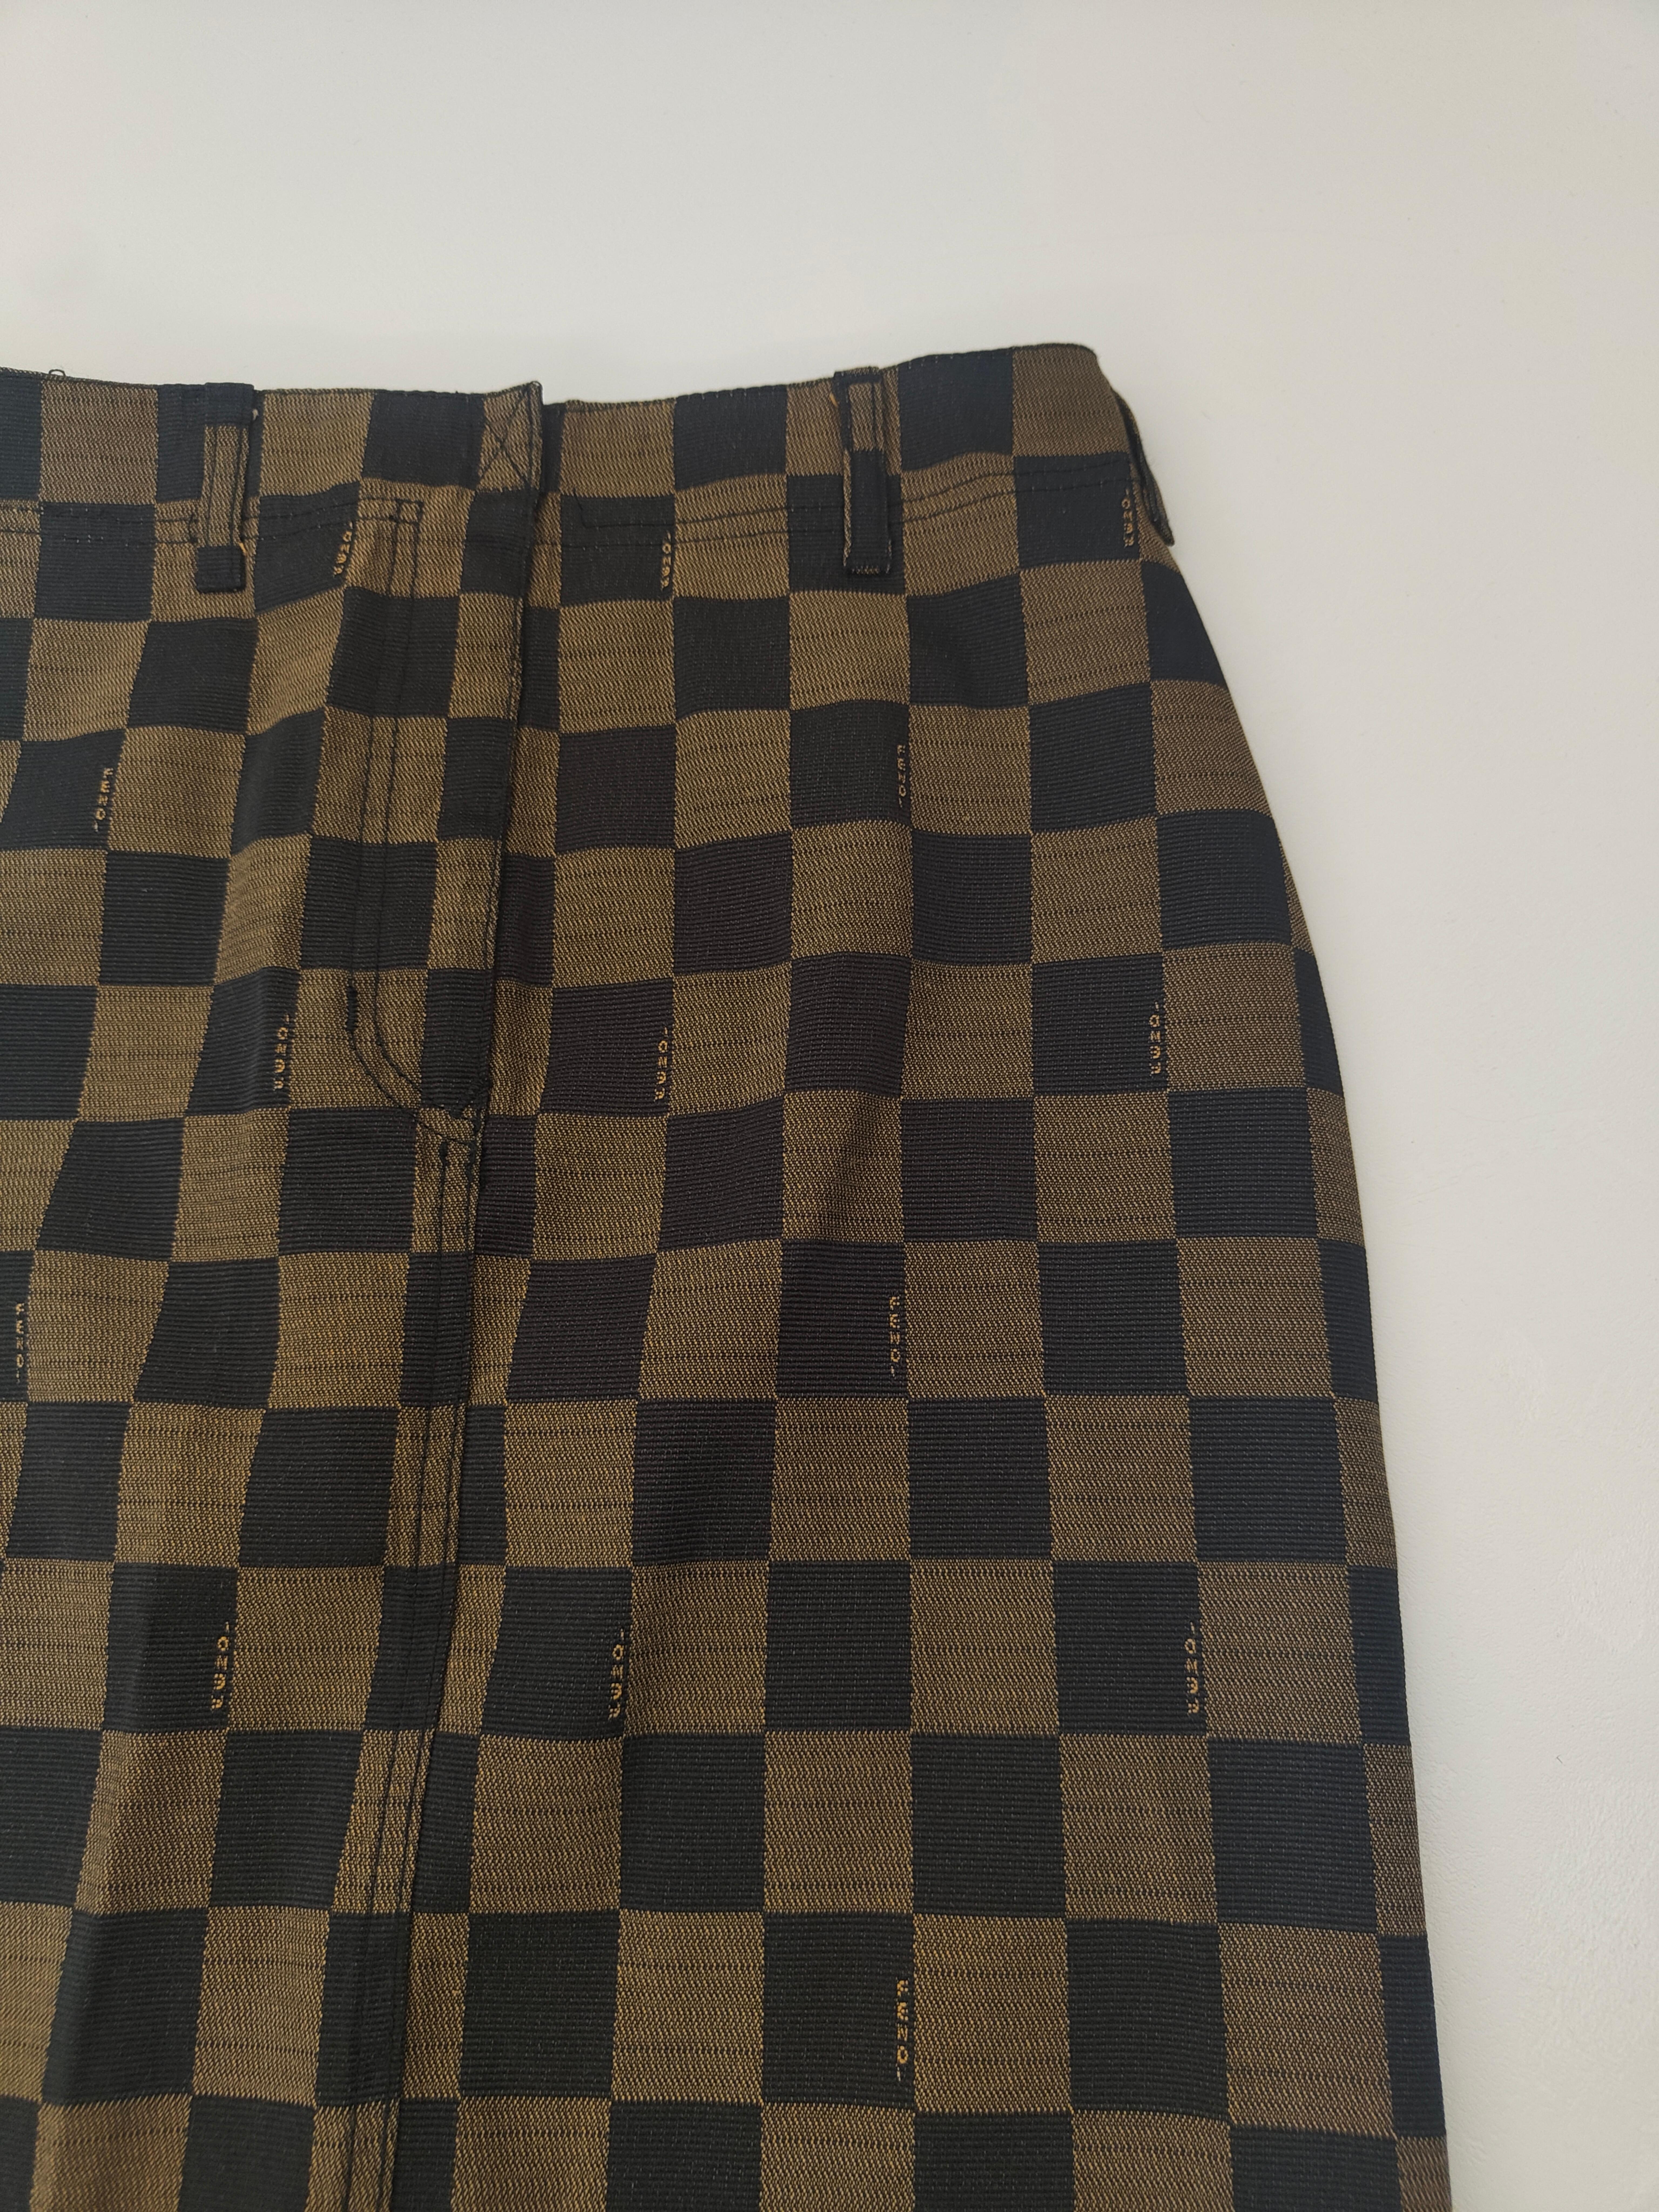 Fendi brown black skirt

Waist 68 cm

lenght 56 cm
